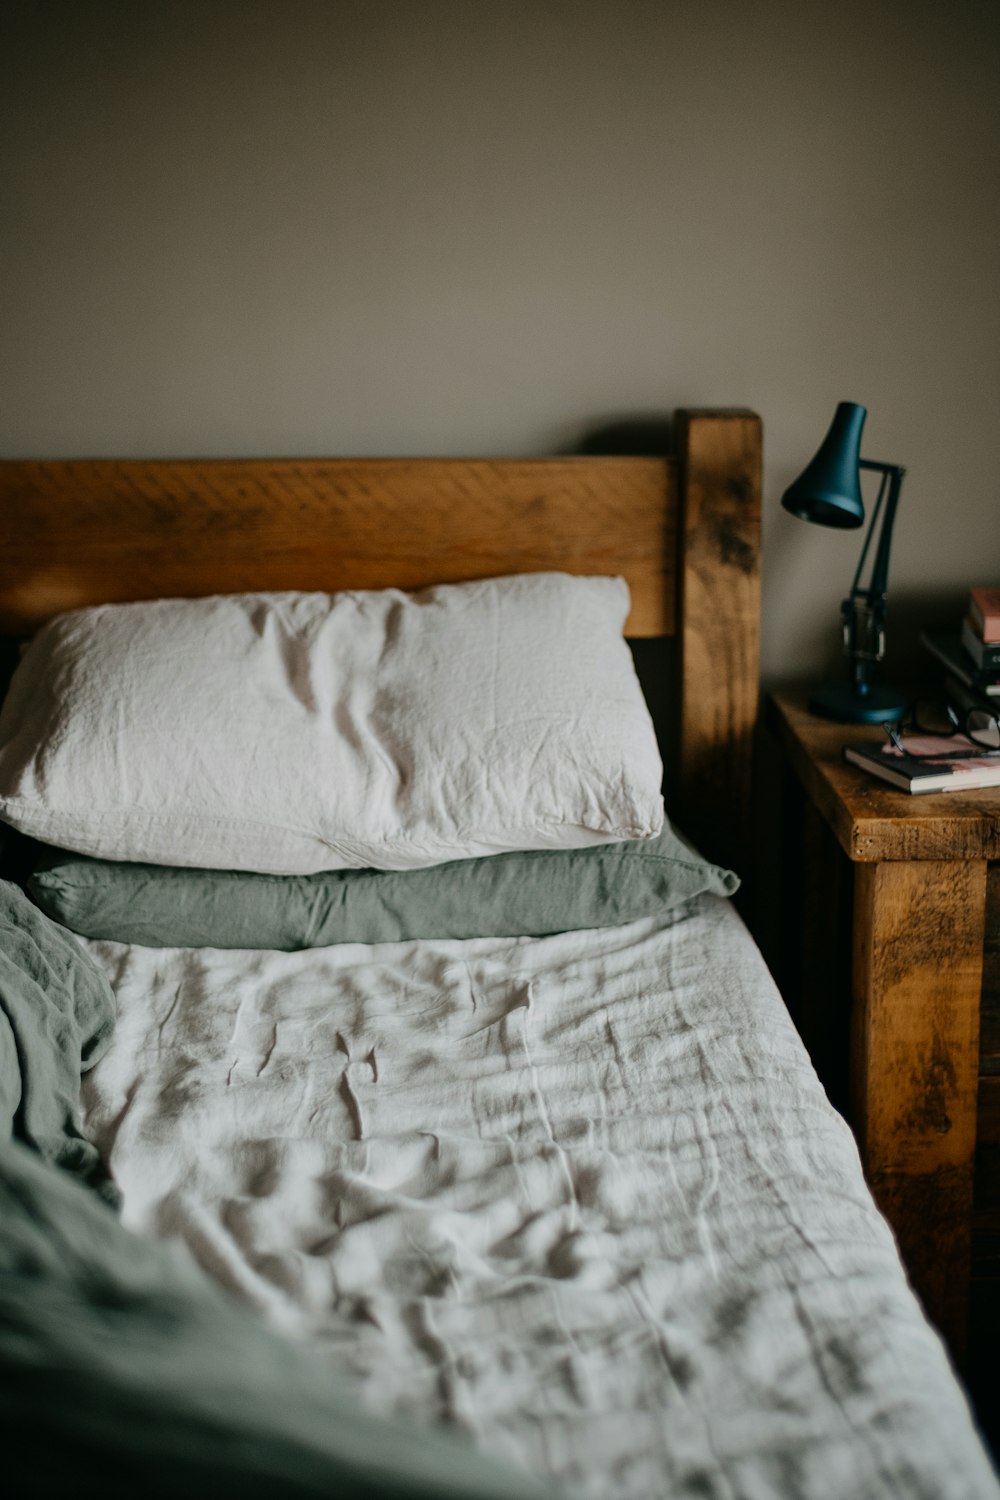 흰색 이불과 나무 머리판이 있는 침대